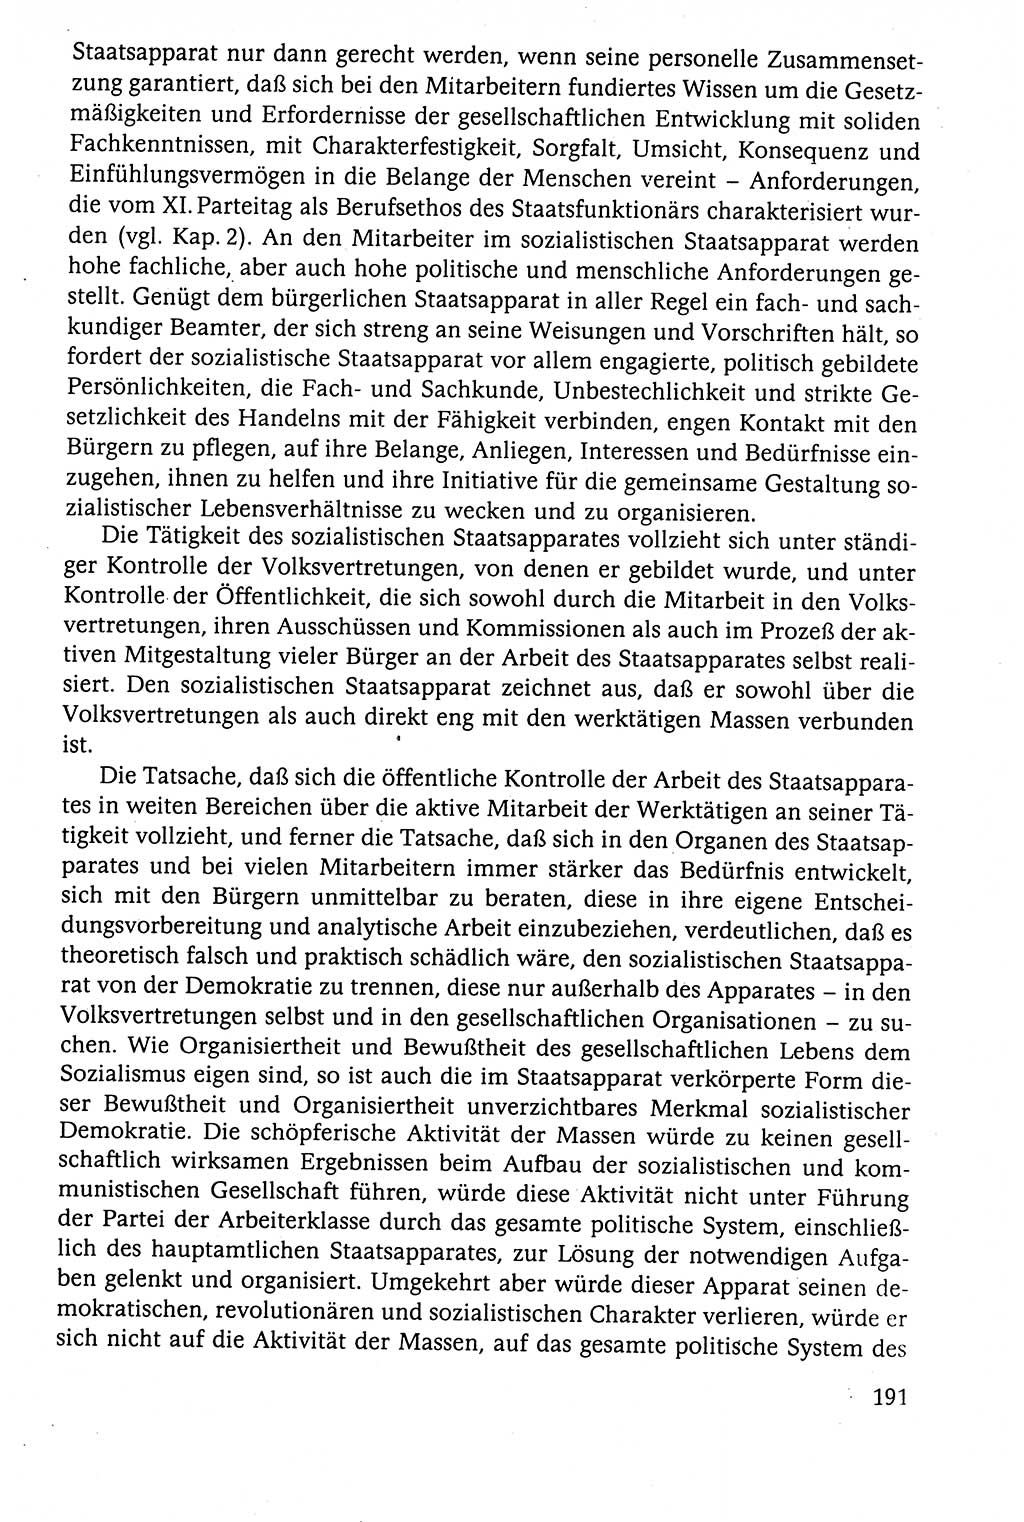 Der Staat im politischen System der DDR (Deutsche Demokratische Republik) 1986, Seite 191 (St. pol. Sys. DDR 1986, S. 191)